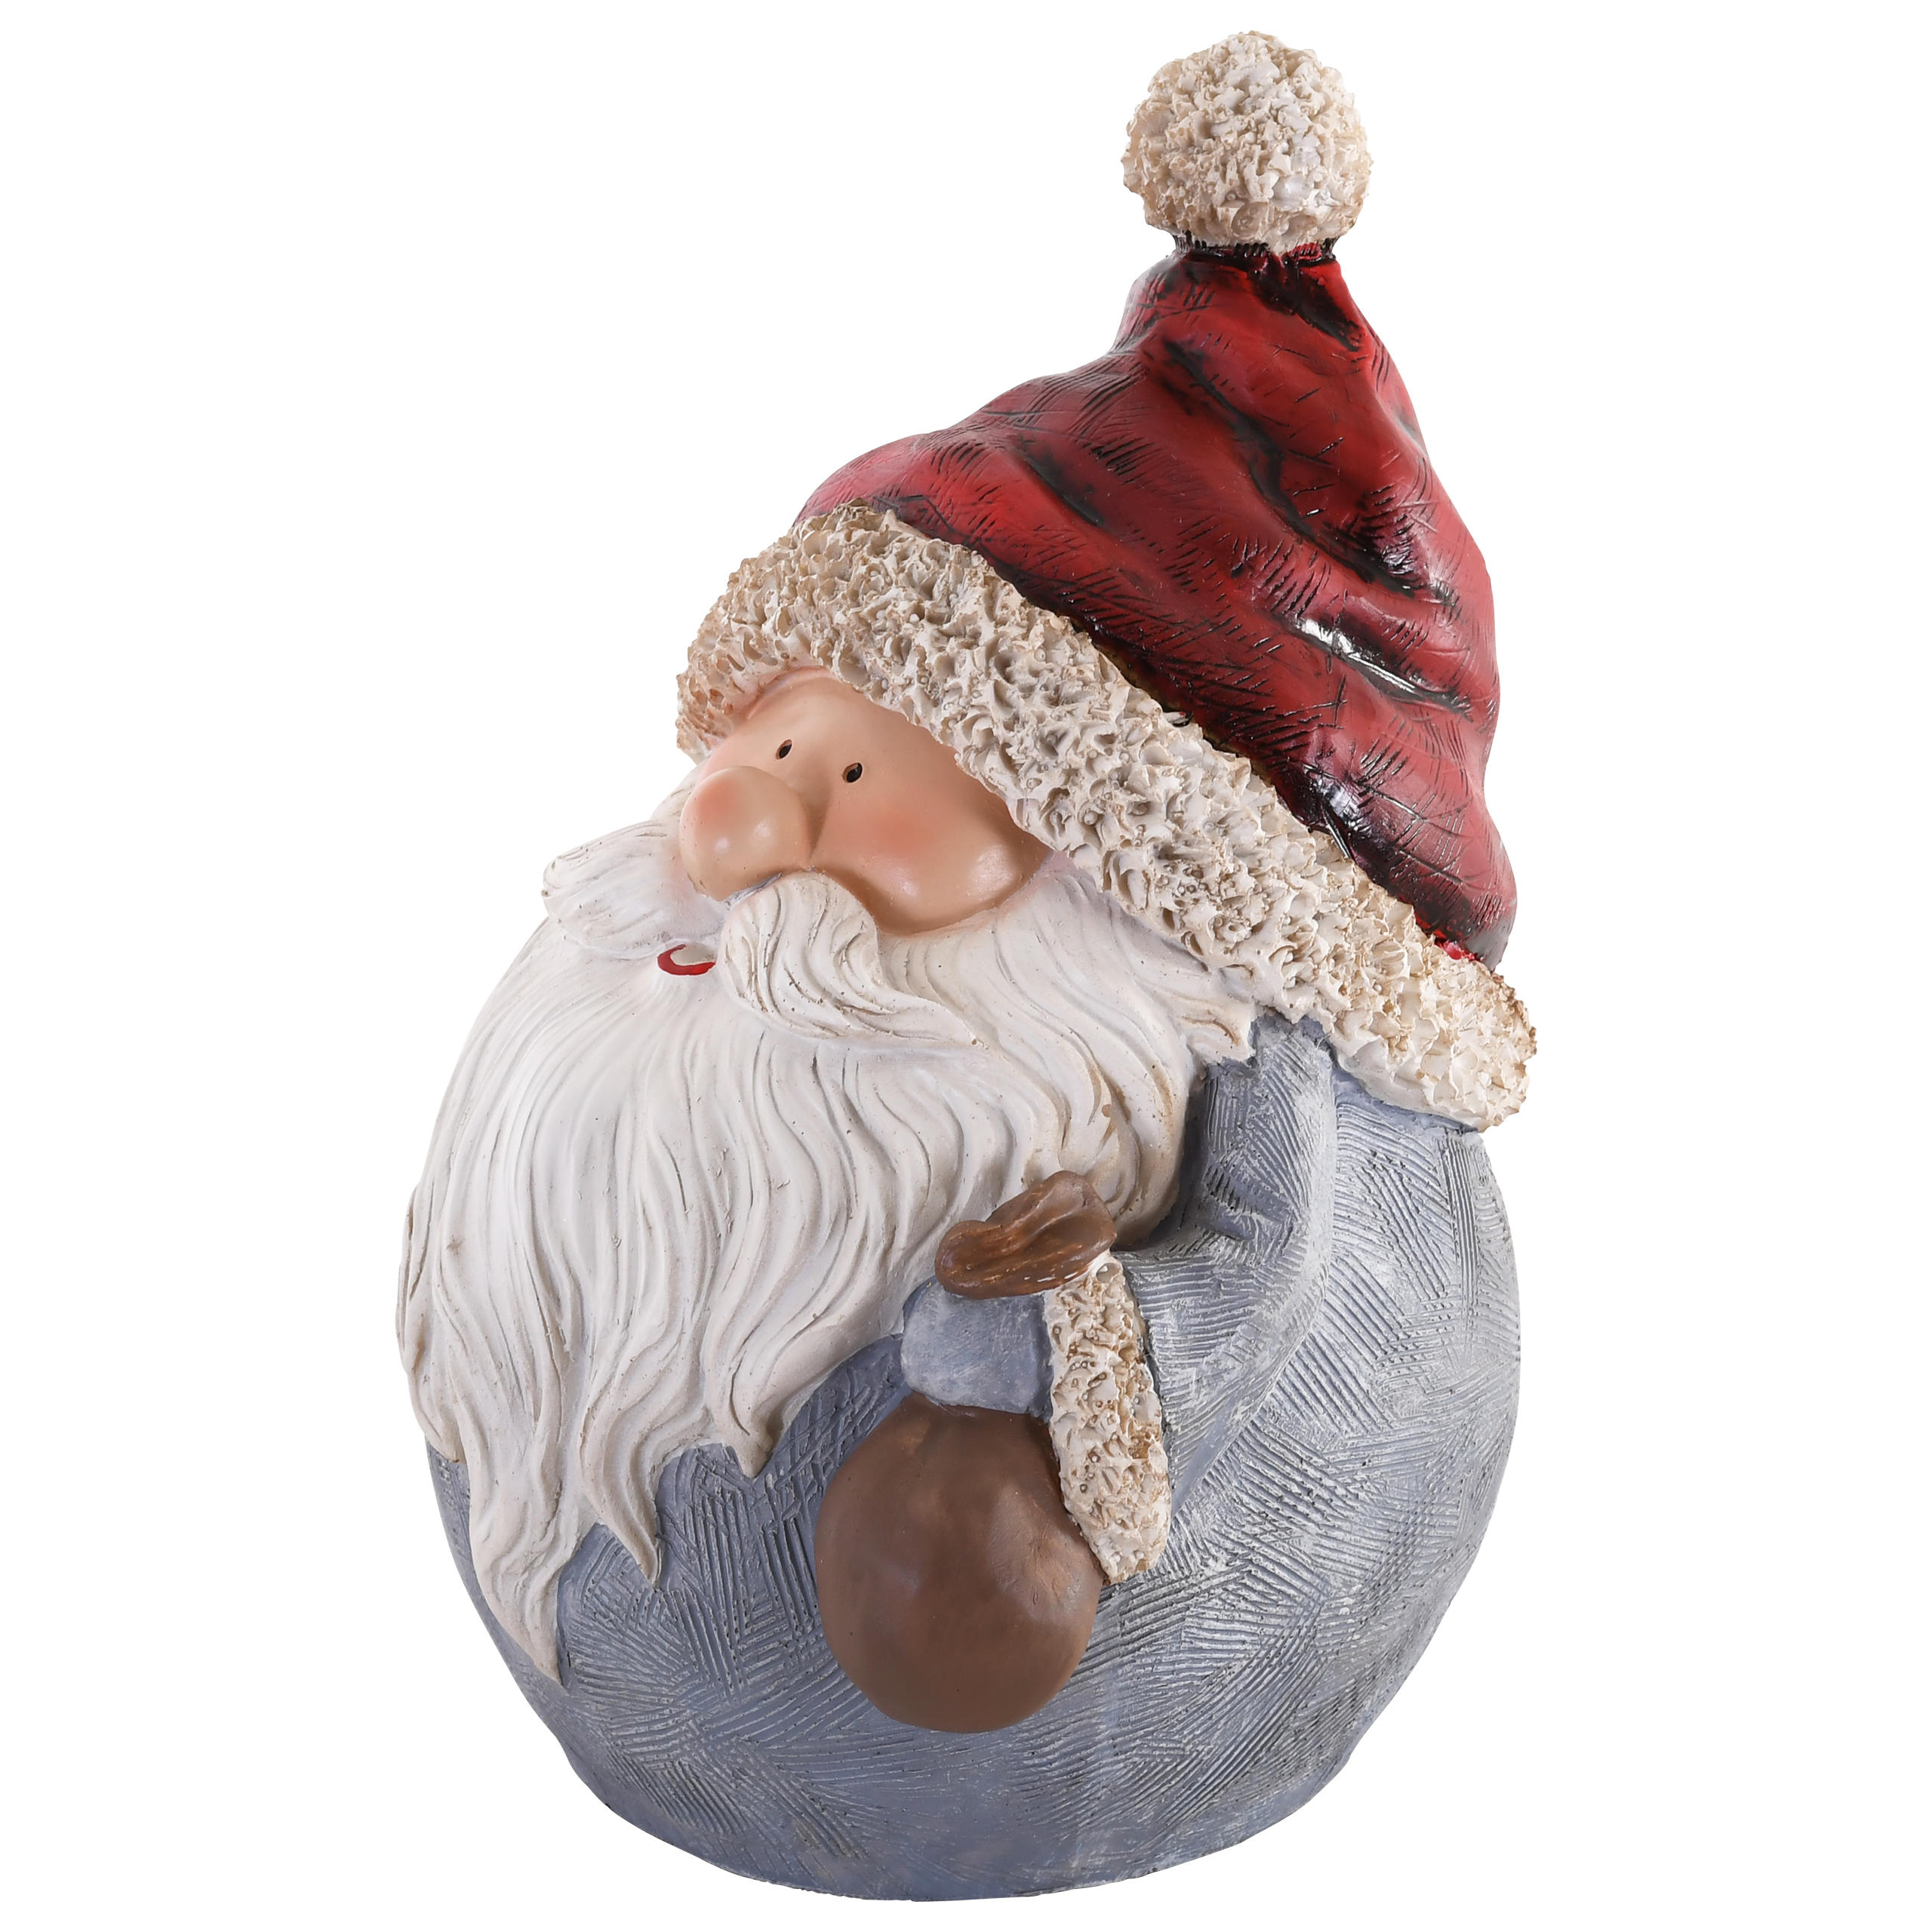 Raburg Dekofigur Weihnachtsmann Kugel mit Säckchen, blauer Mantel, rote Mütze, stehend, 27 cm hoch